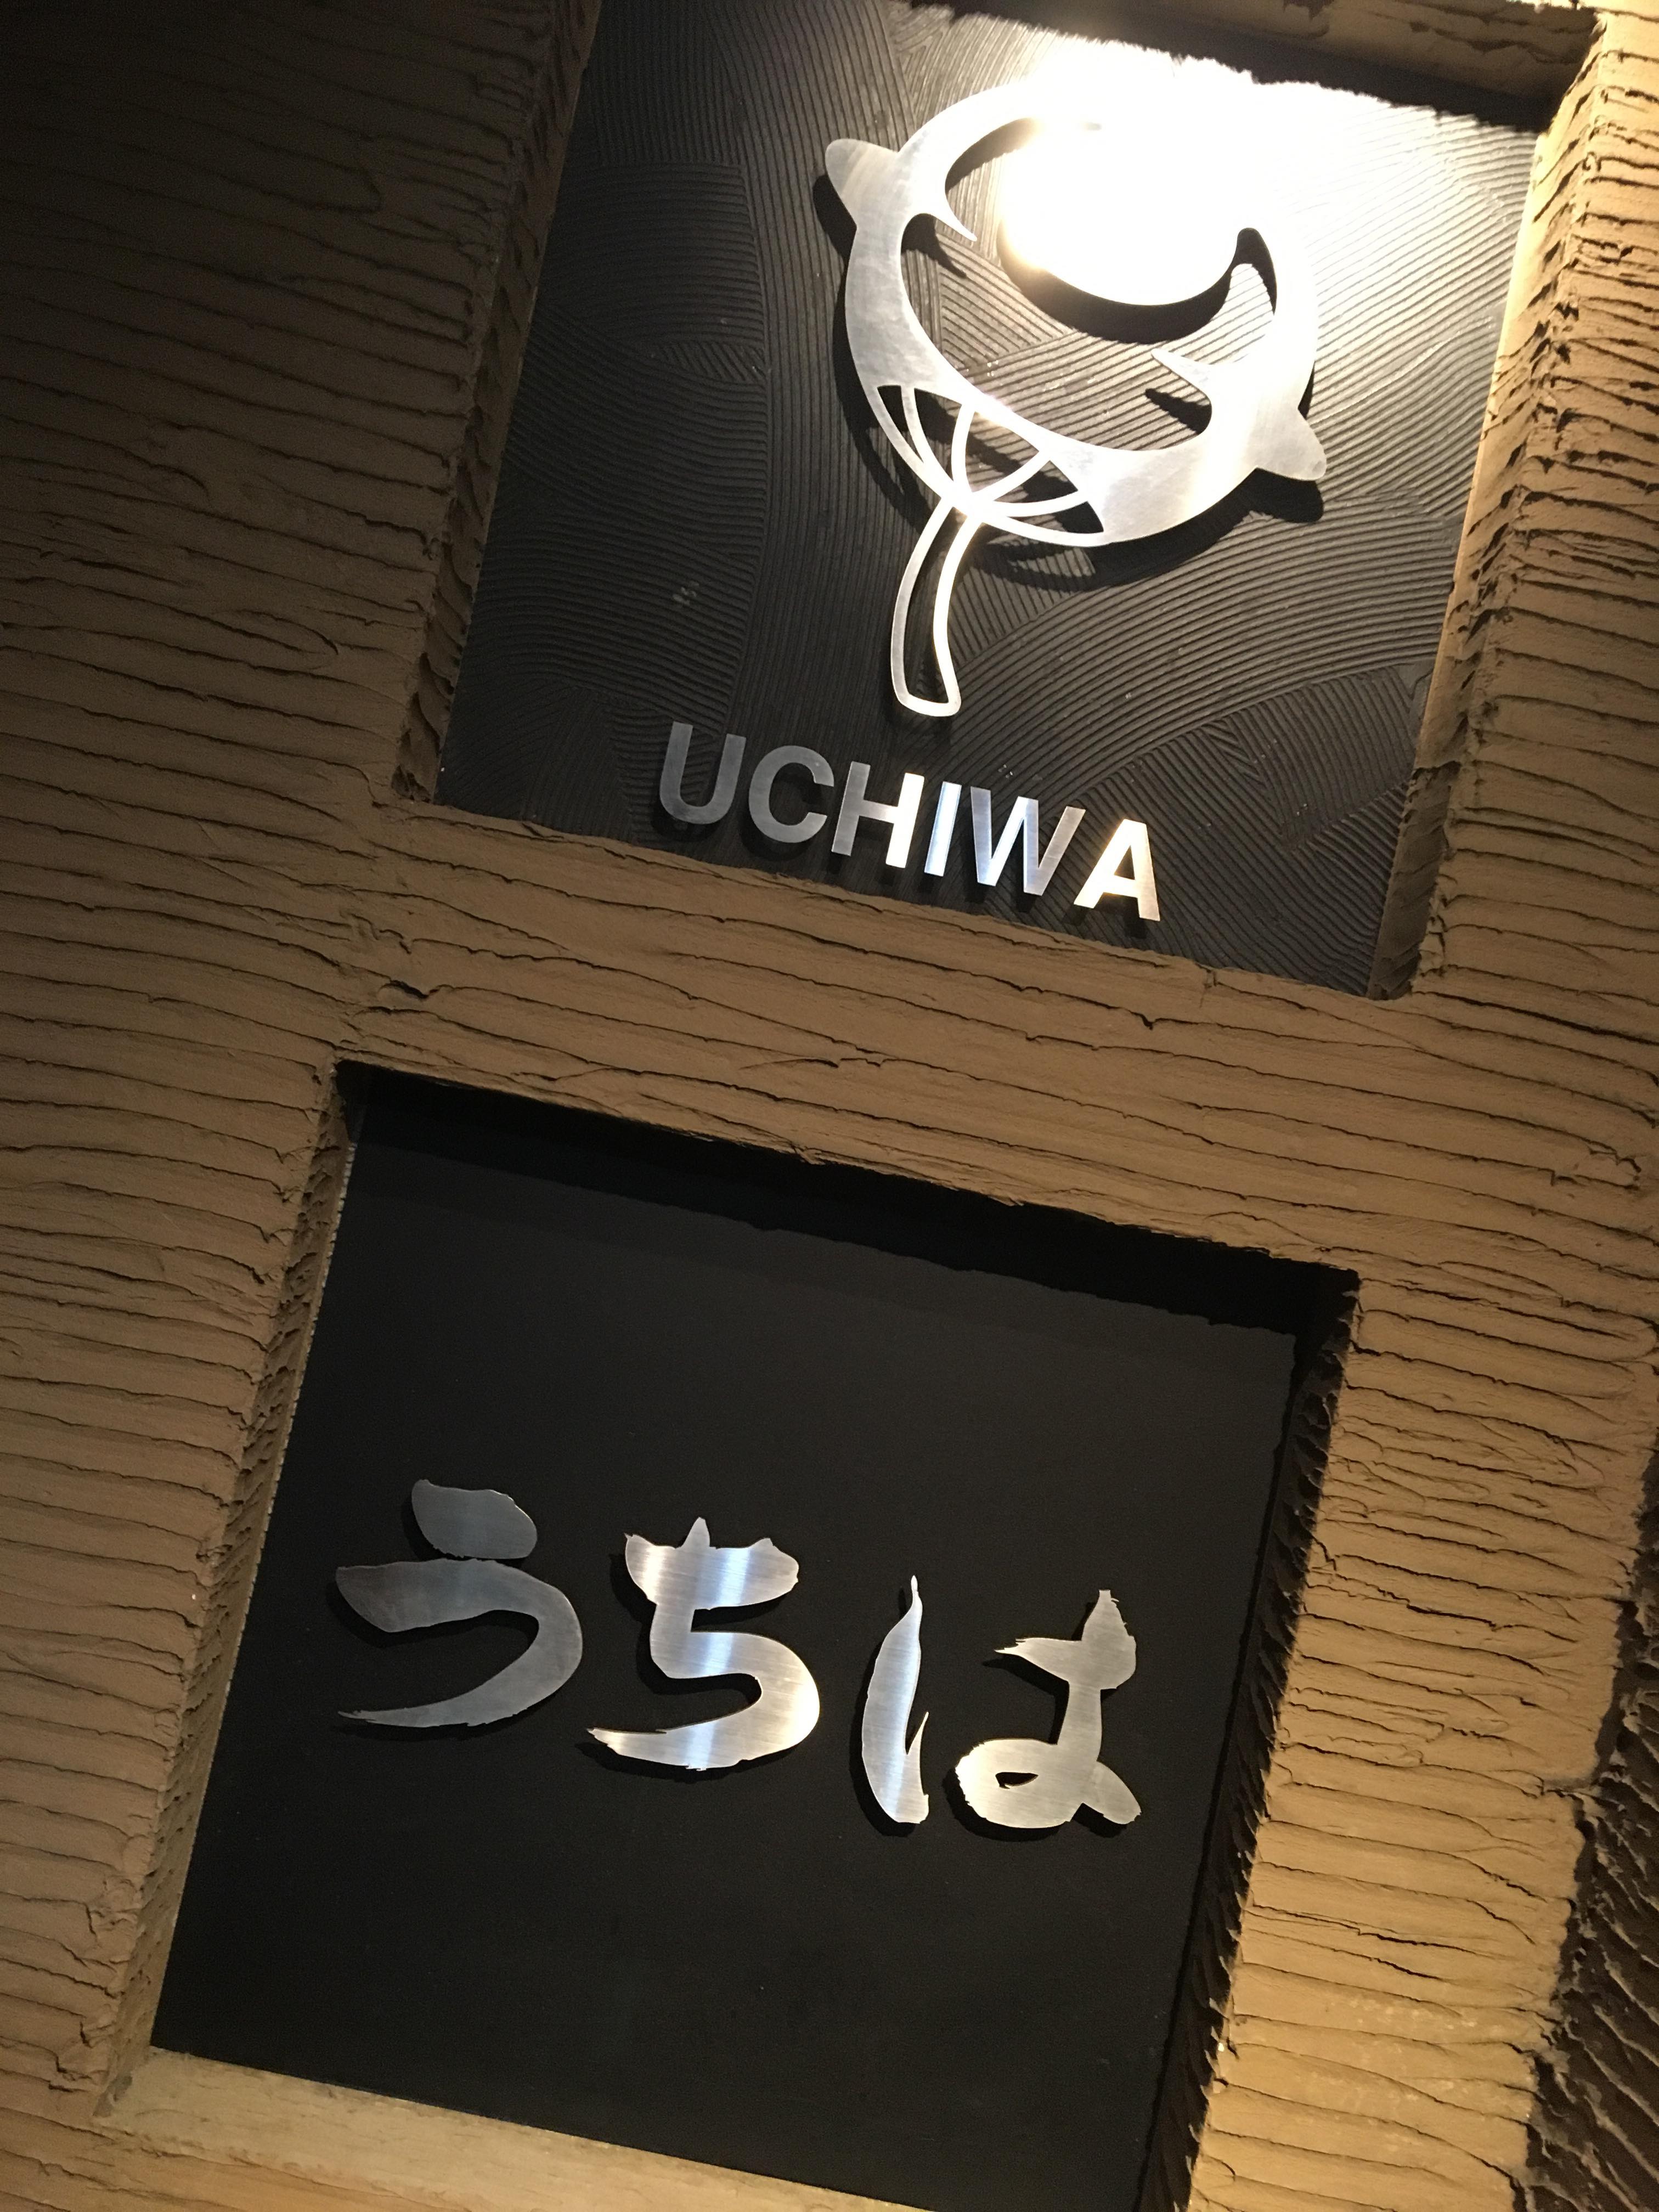 Uchiwa outside logo